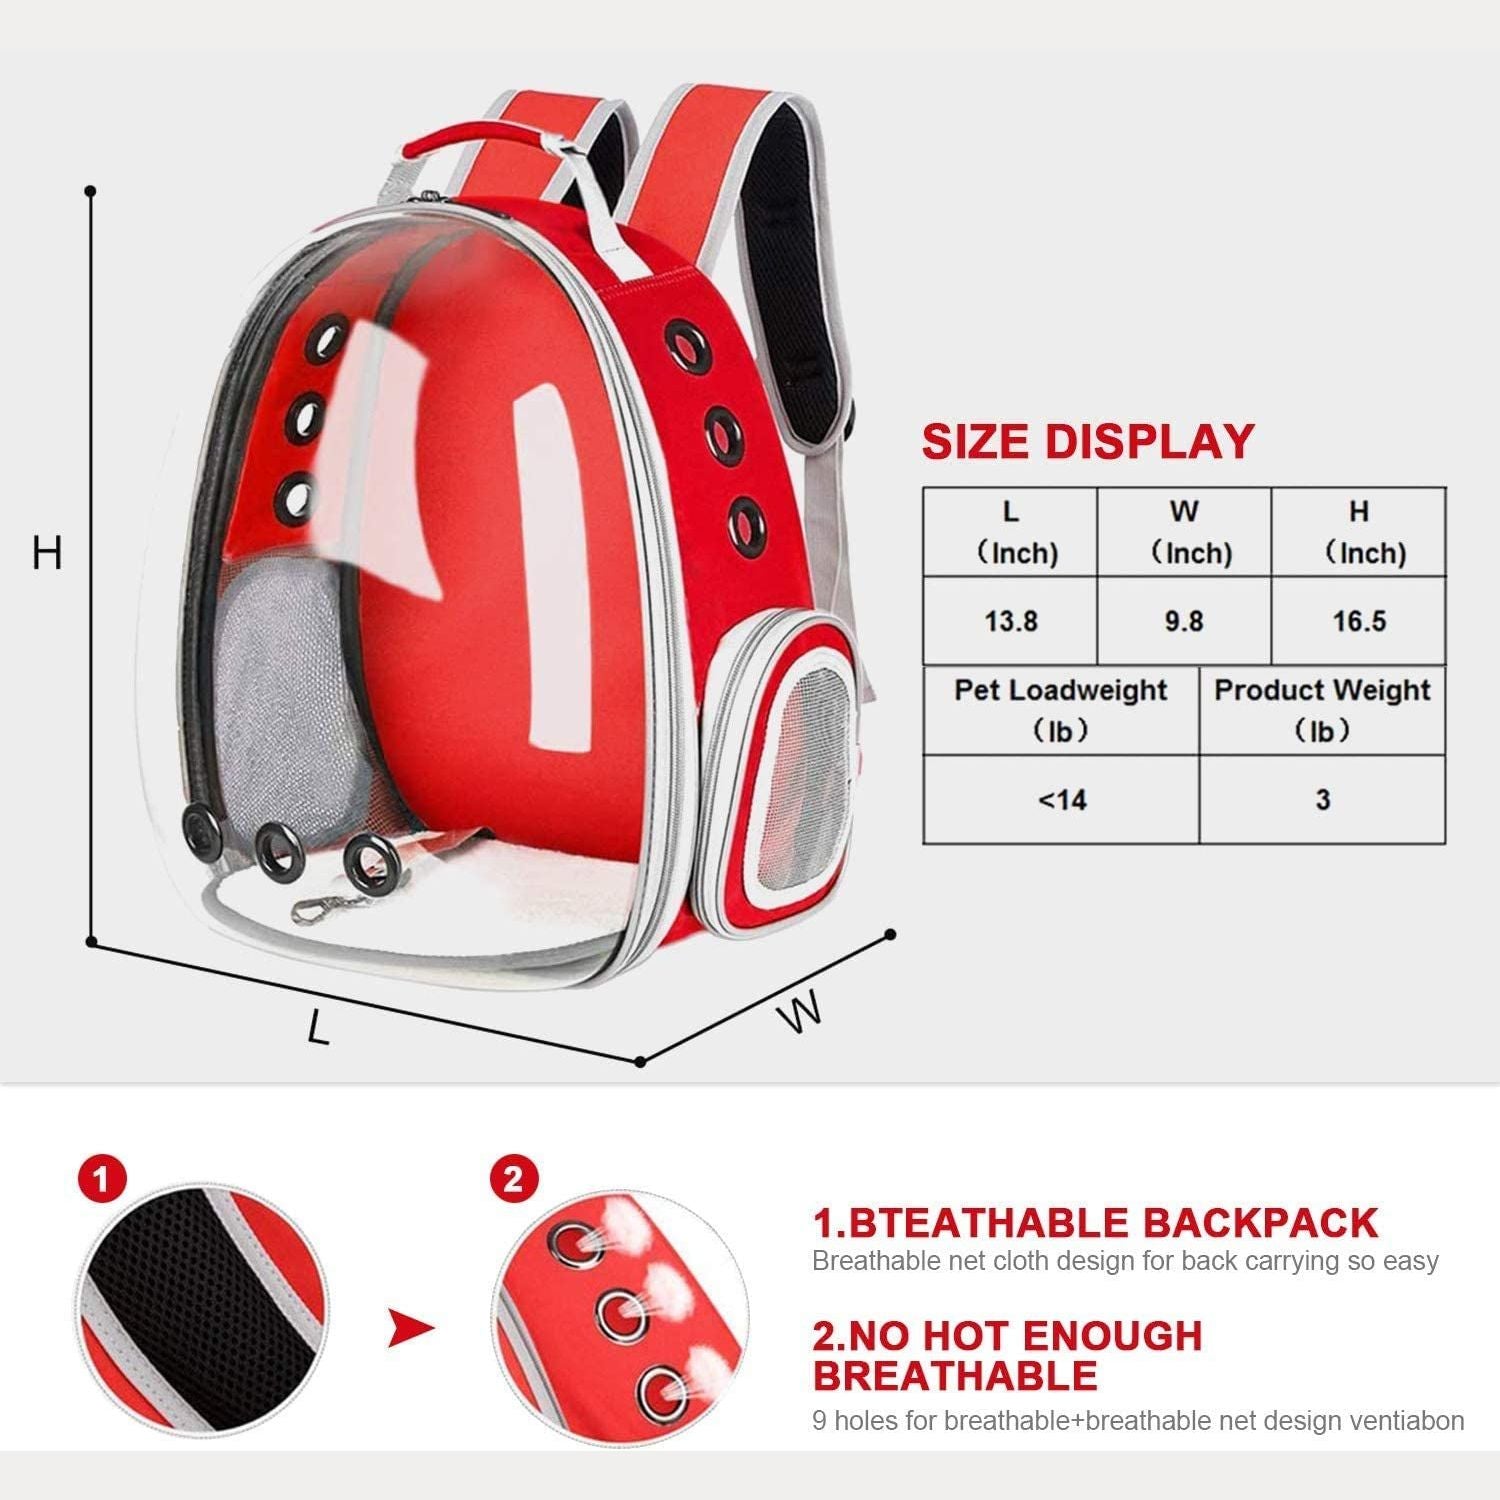 Floofi Space Capsule Backpack - Model 1 (Red)